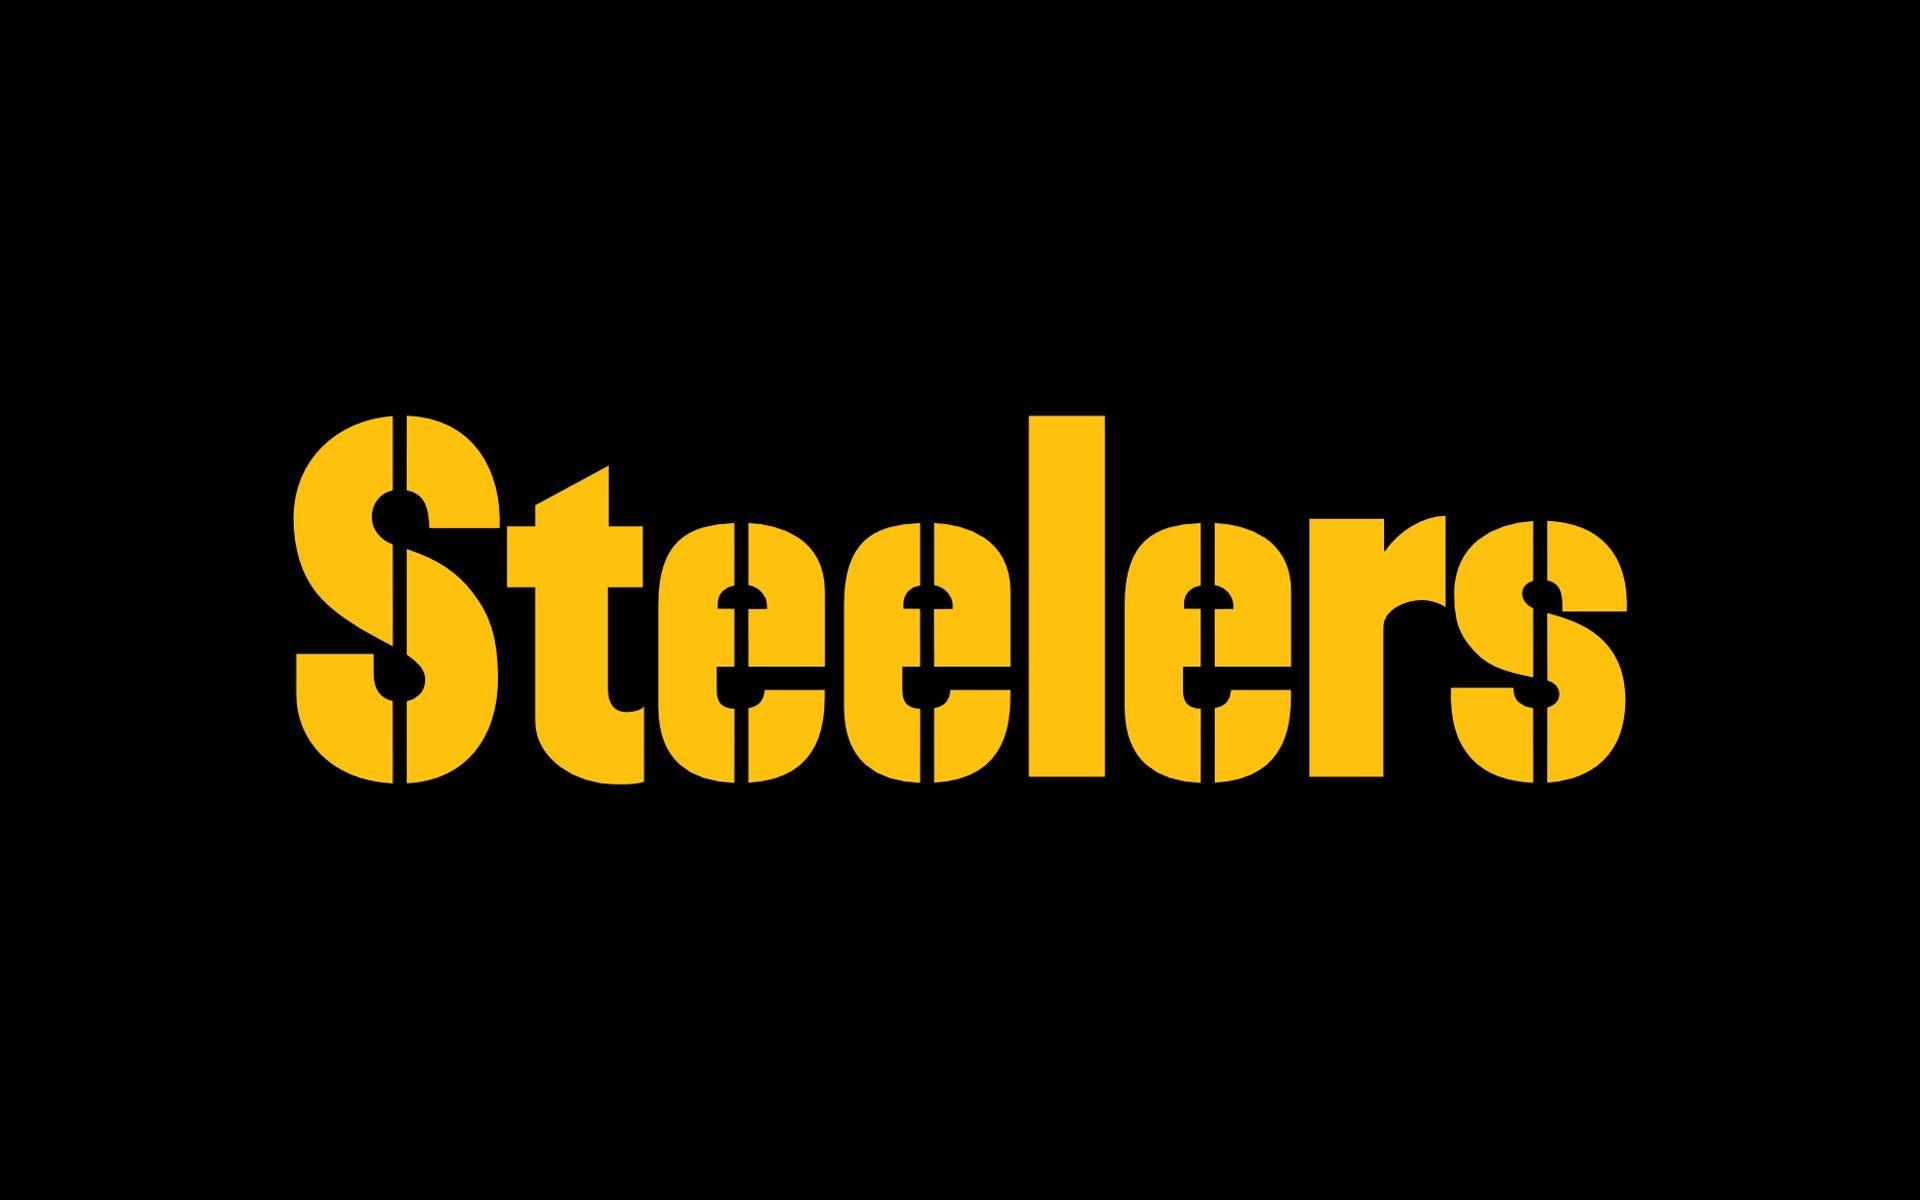 Free Steelers Wallpaper Desktop